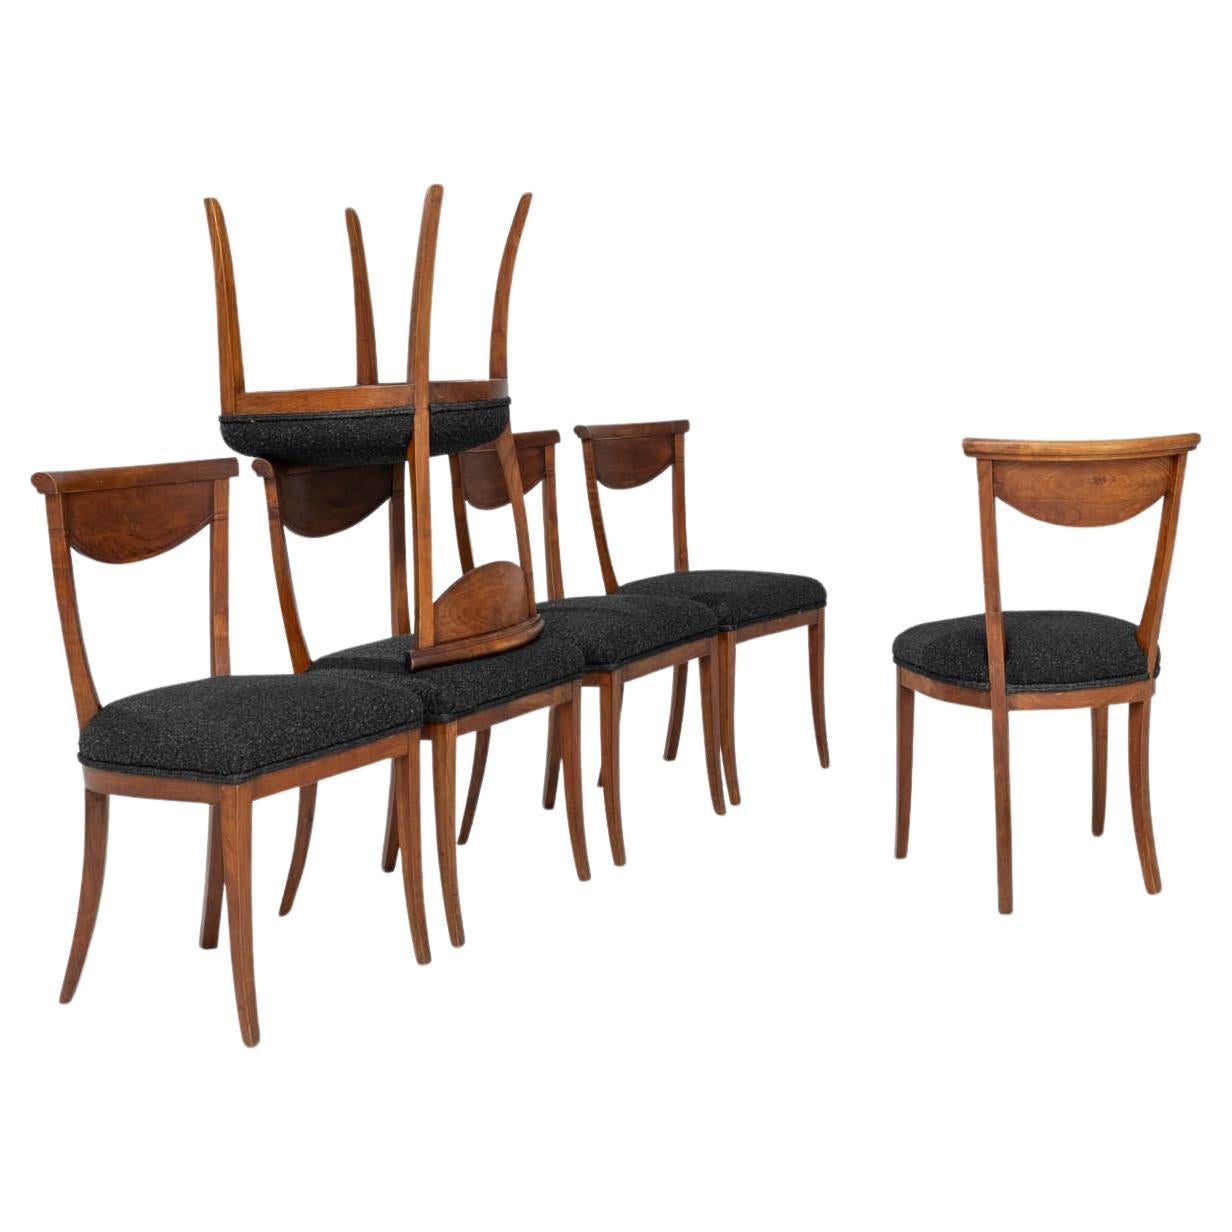 Französische Holz-Esszimmerstühle des 19. Jahrhunderts mit gepolsterten Sitzen, 6er-Set